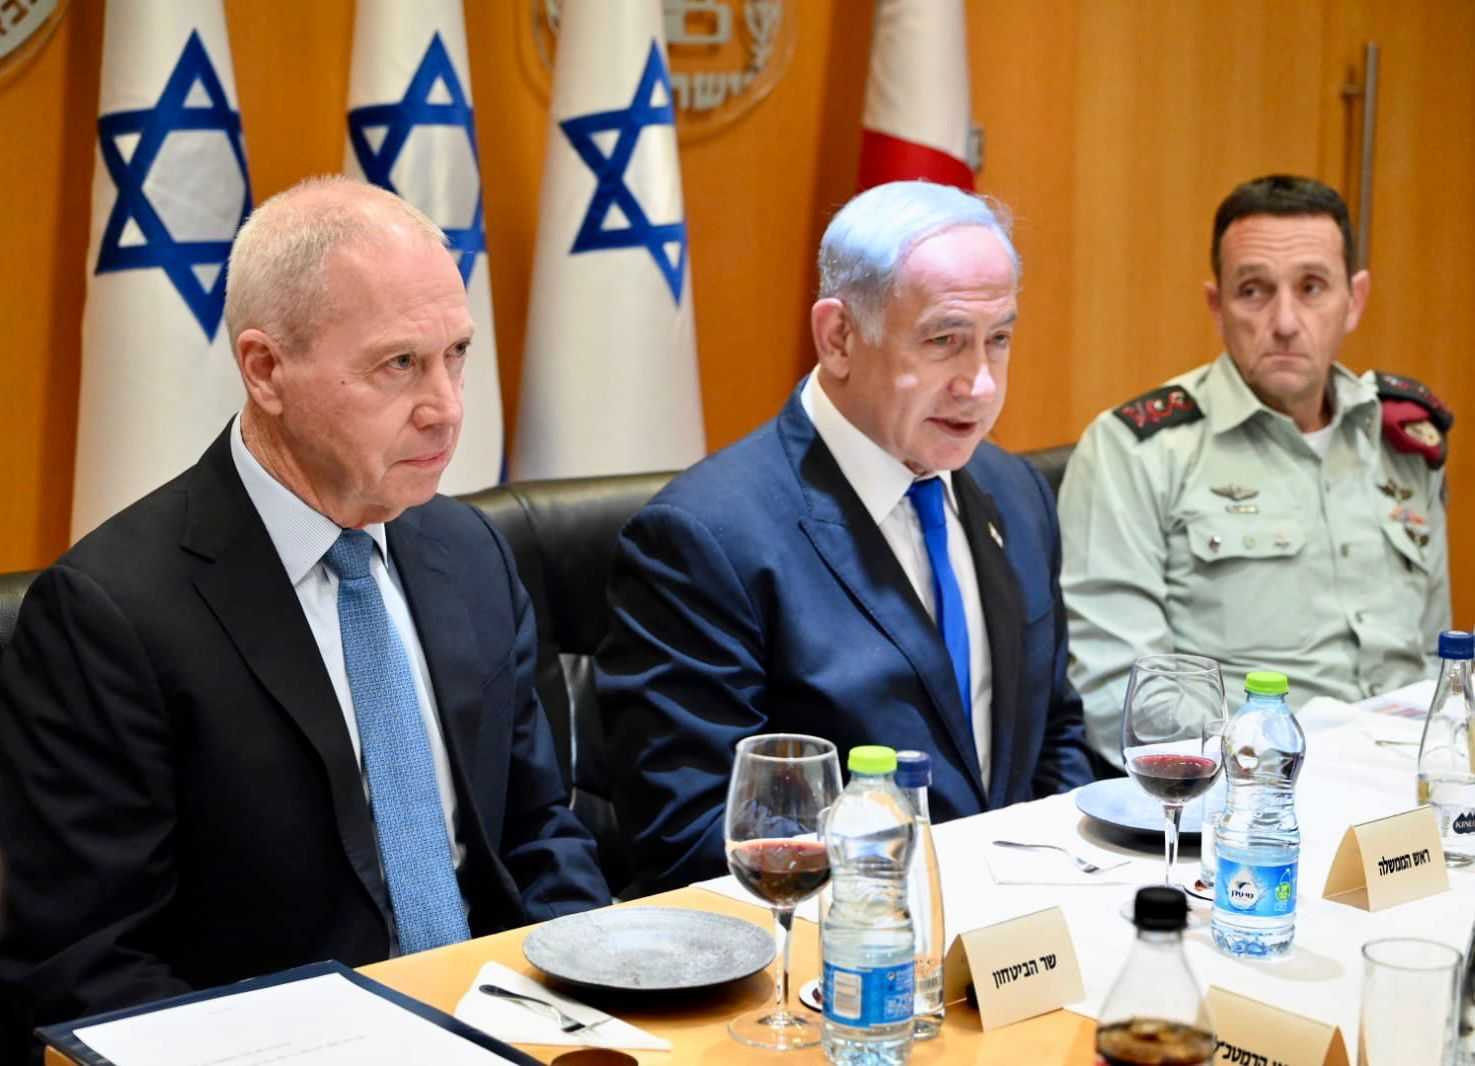 从左至右分别为：以色列防长加兰特、总理内塔尼亚胡、以军参谋长哈勒维。图自《以色列时报》